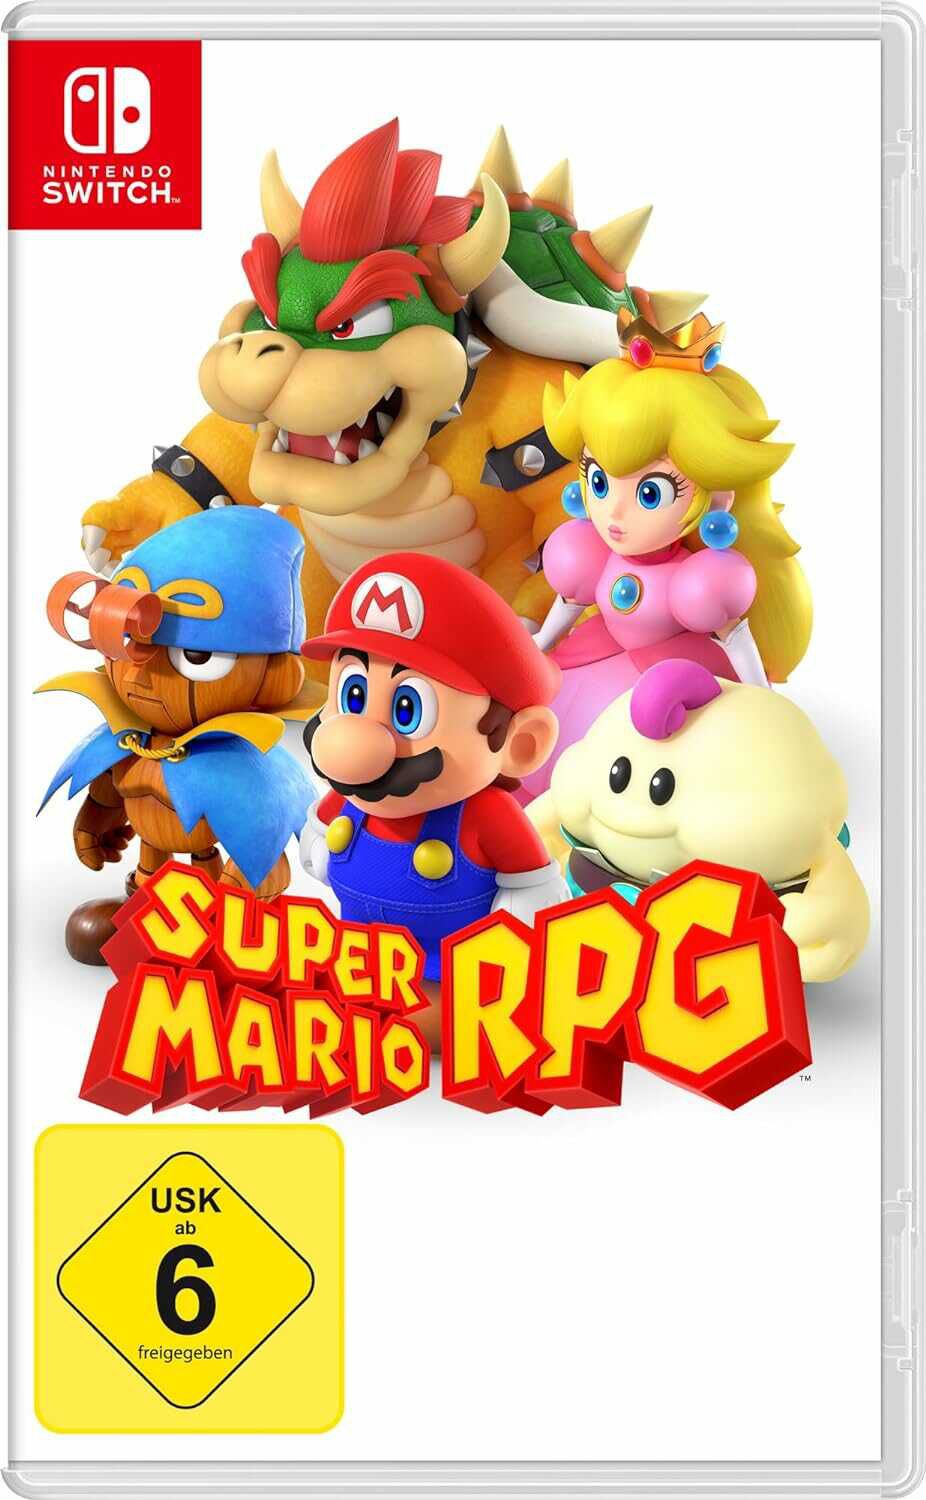 Super Mario RPG als Nintendo Switch Spiel für 42,49€ statt 44,99€